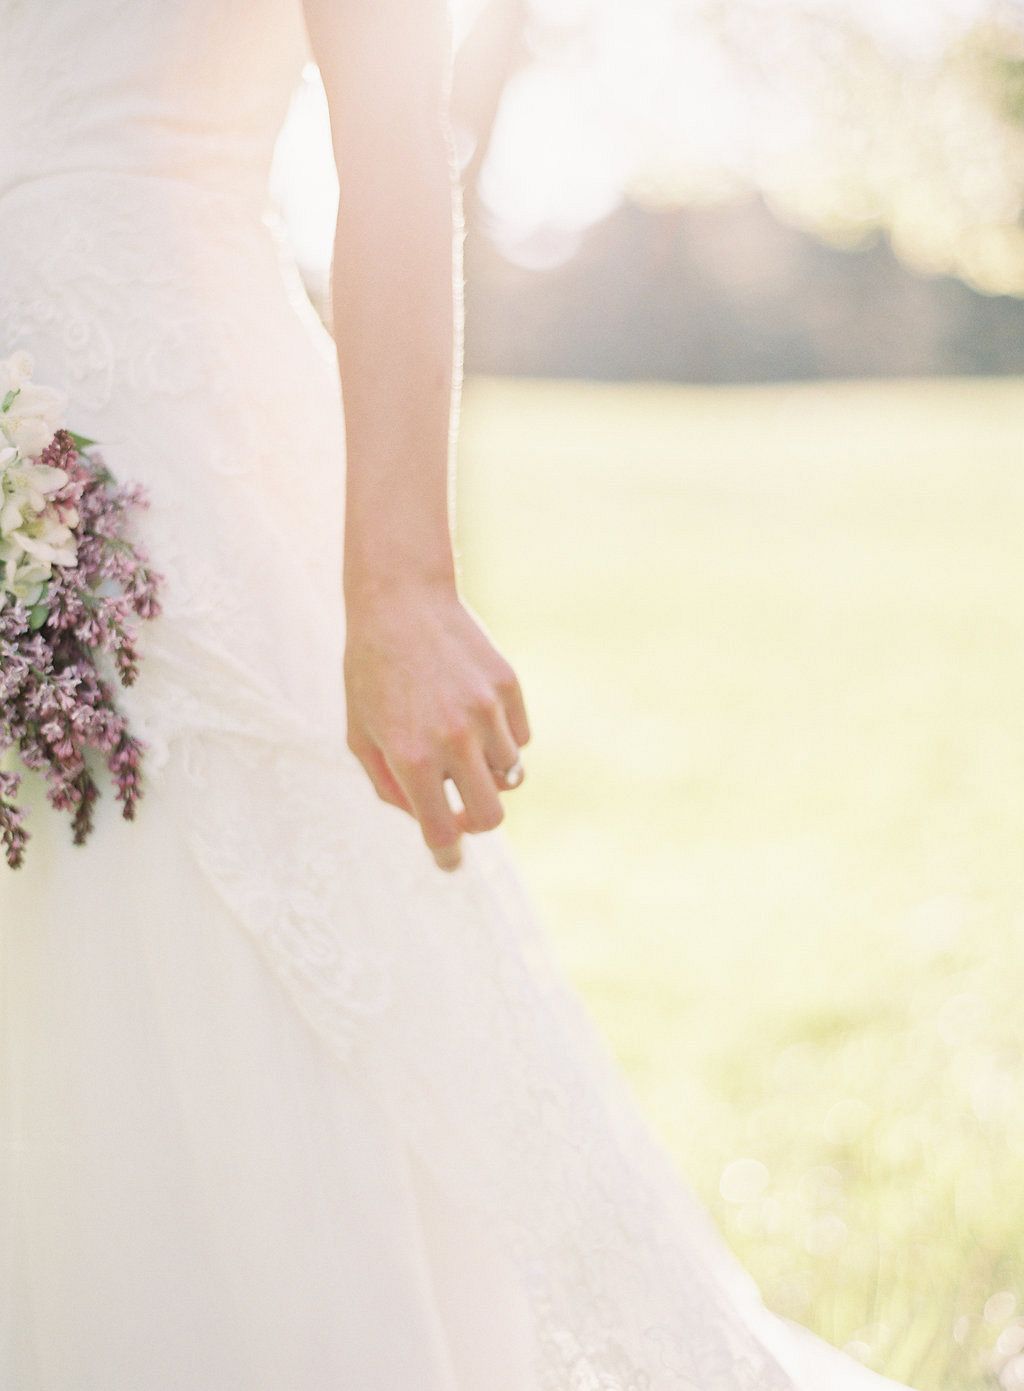 Pale lilac tones for a spring bridal bouquet